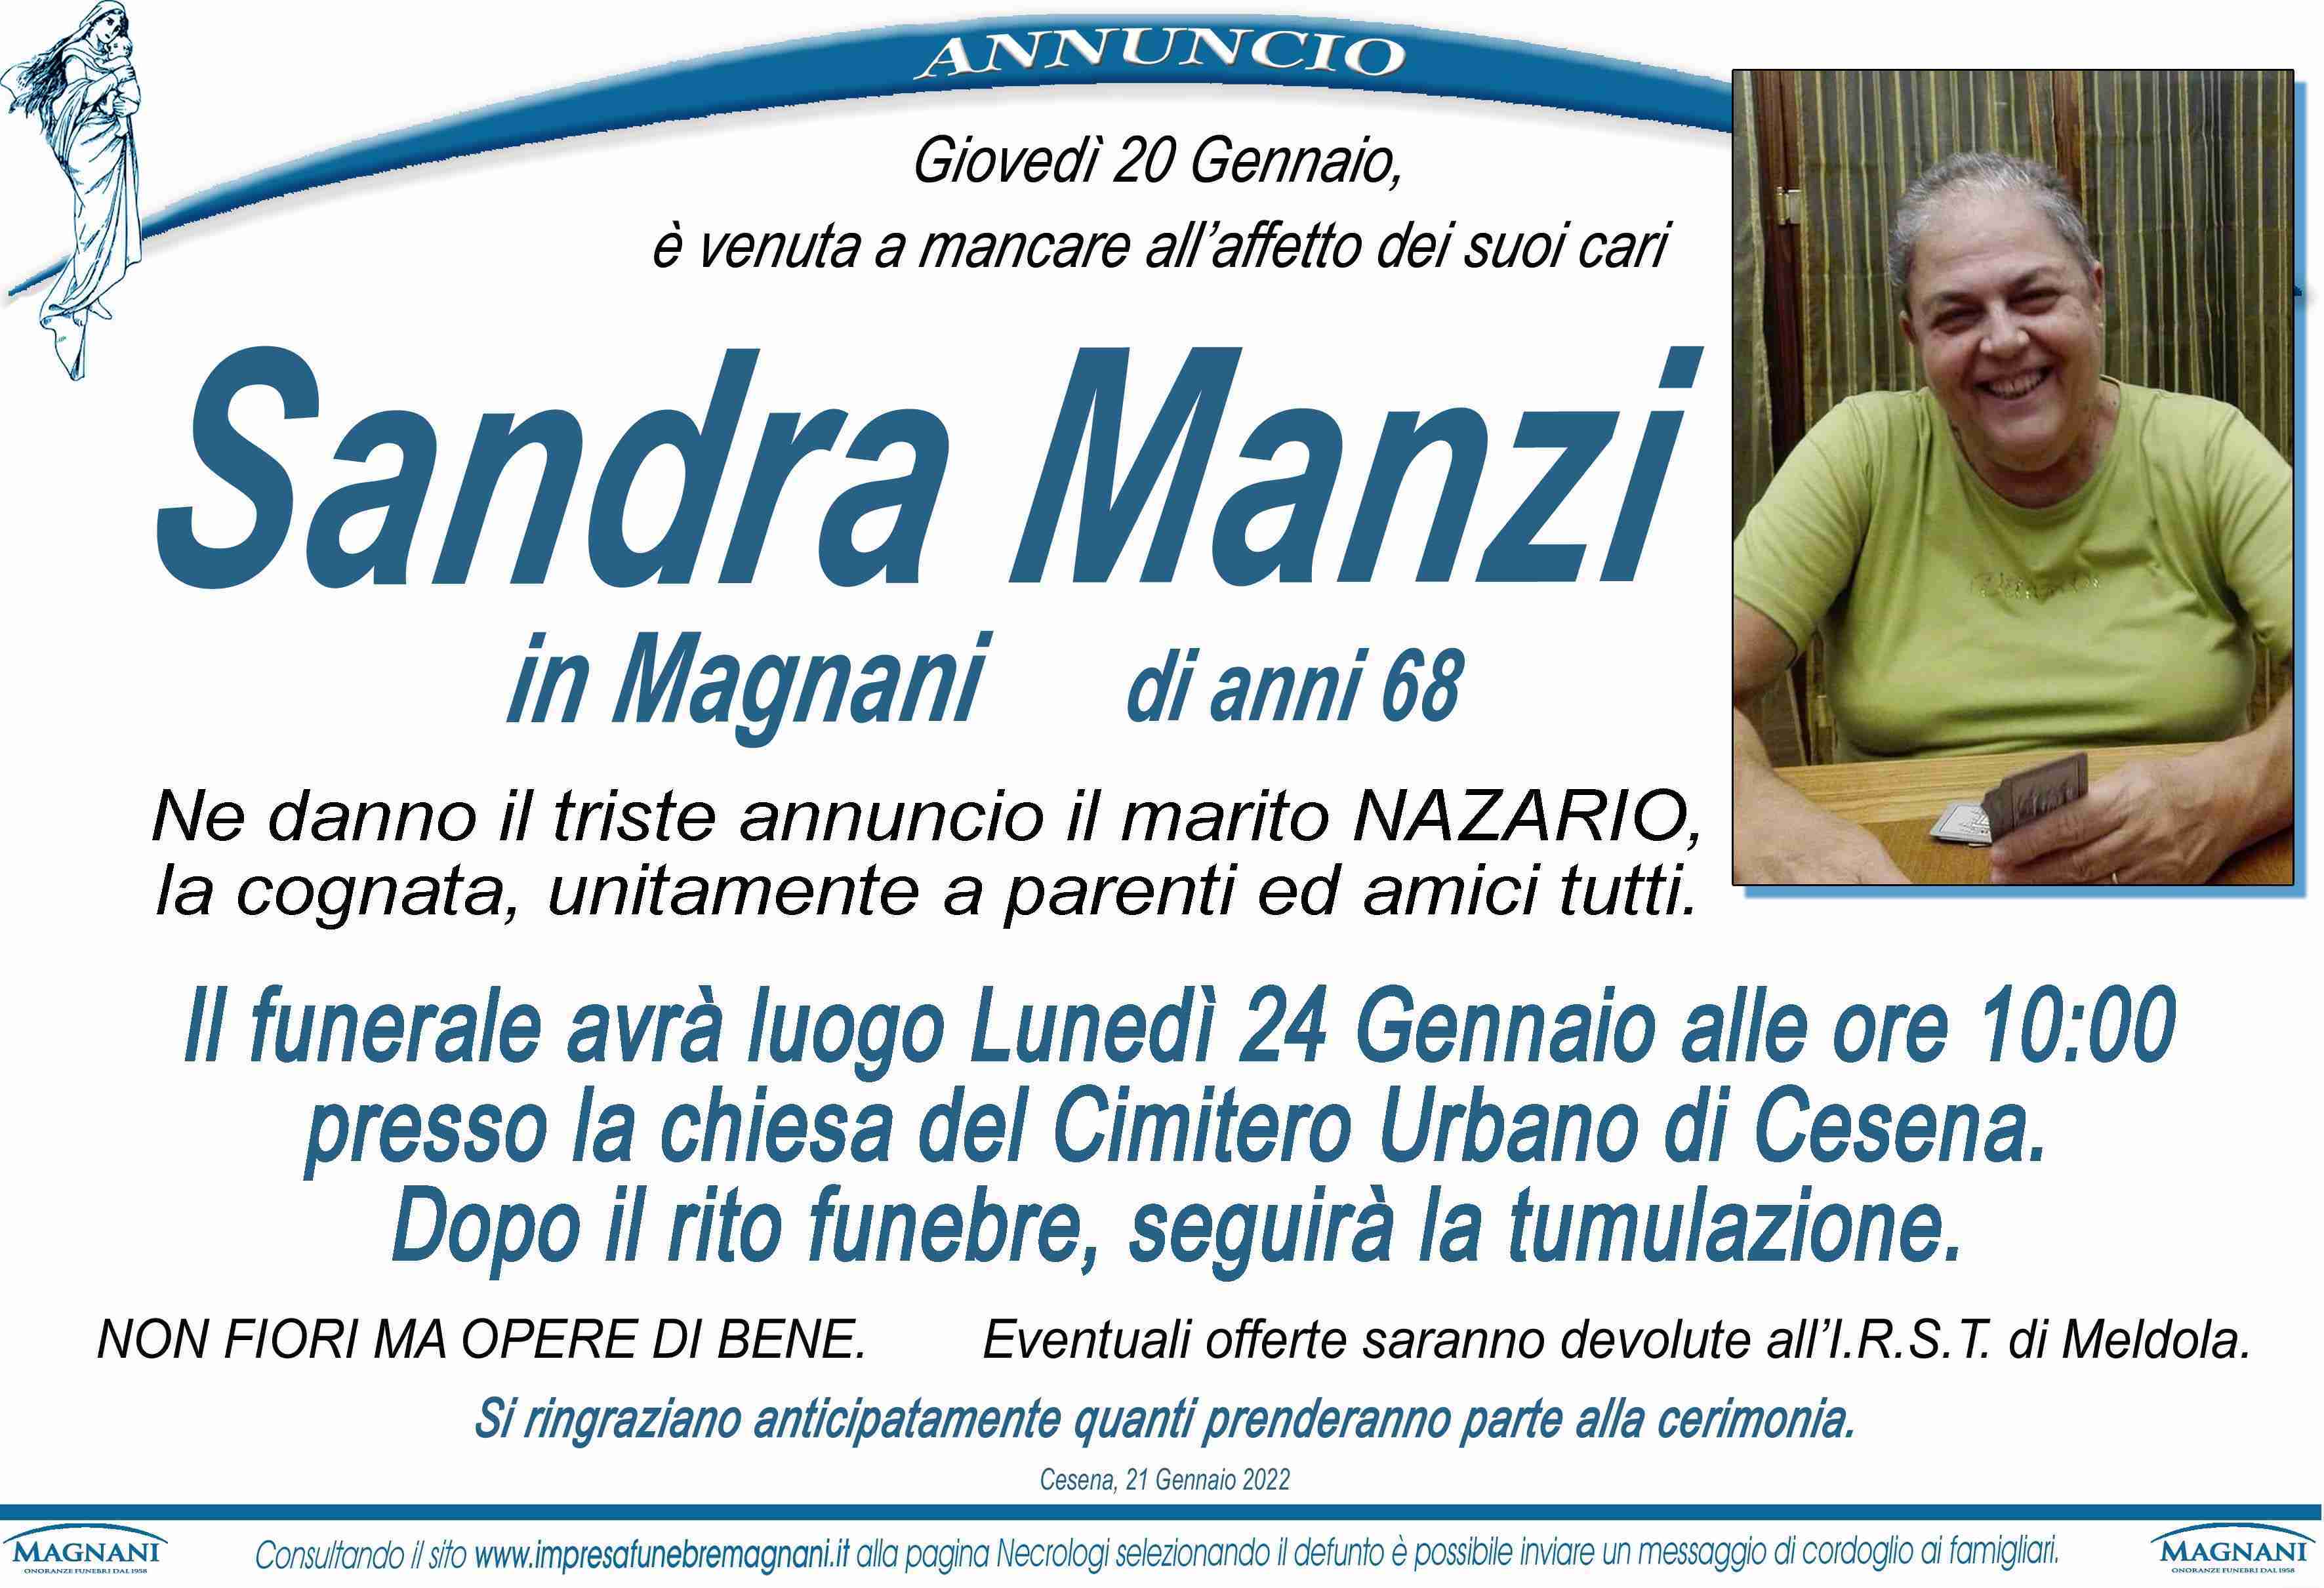 Sandra Manzi